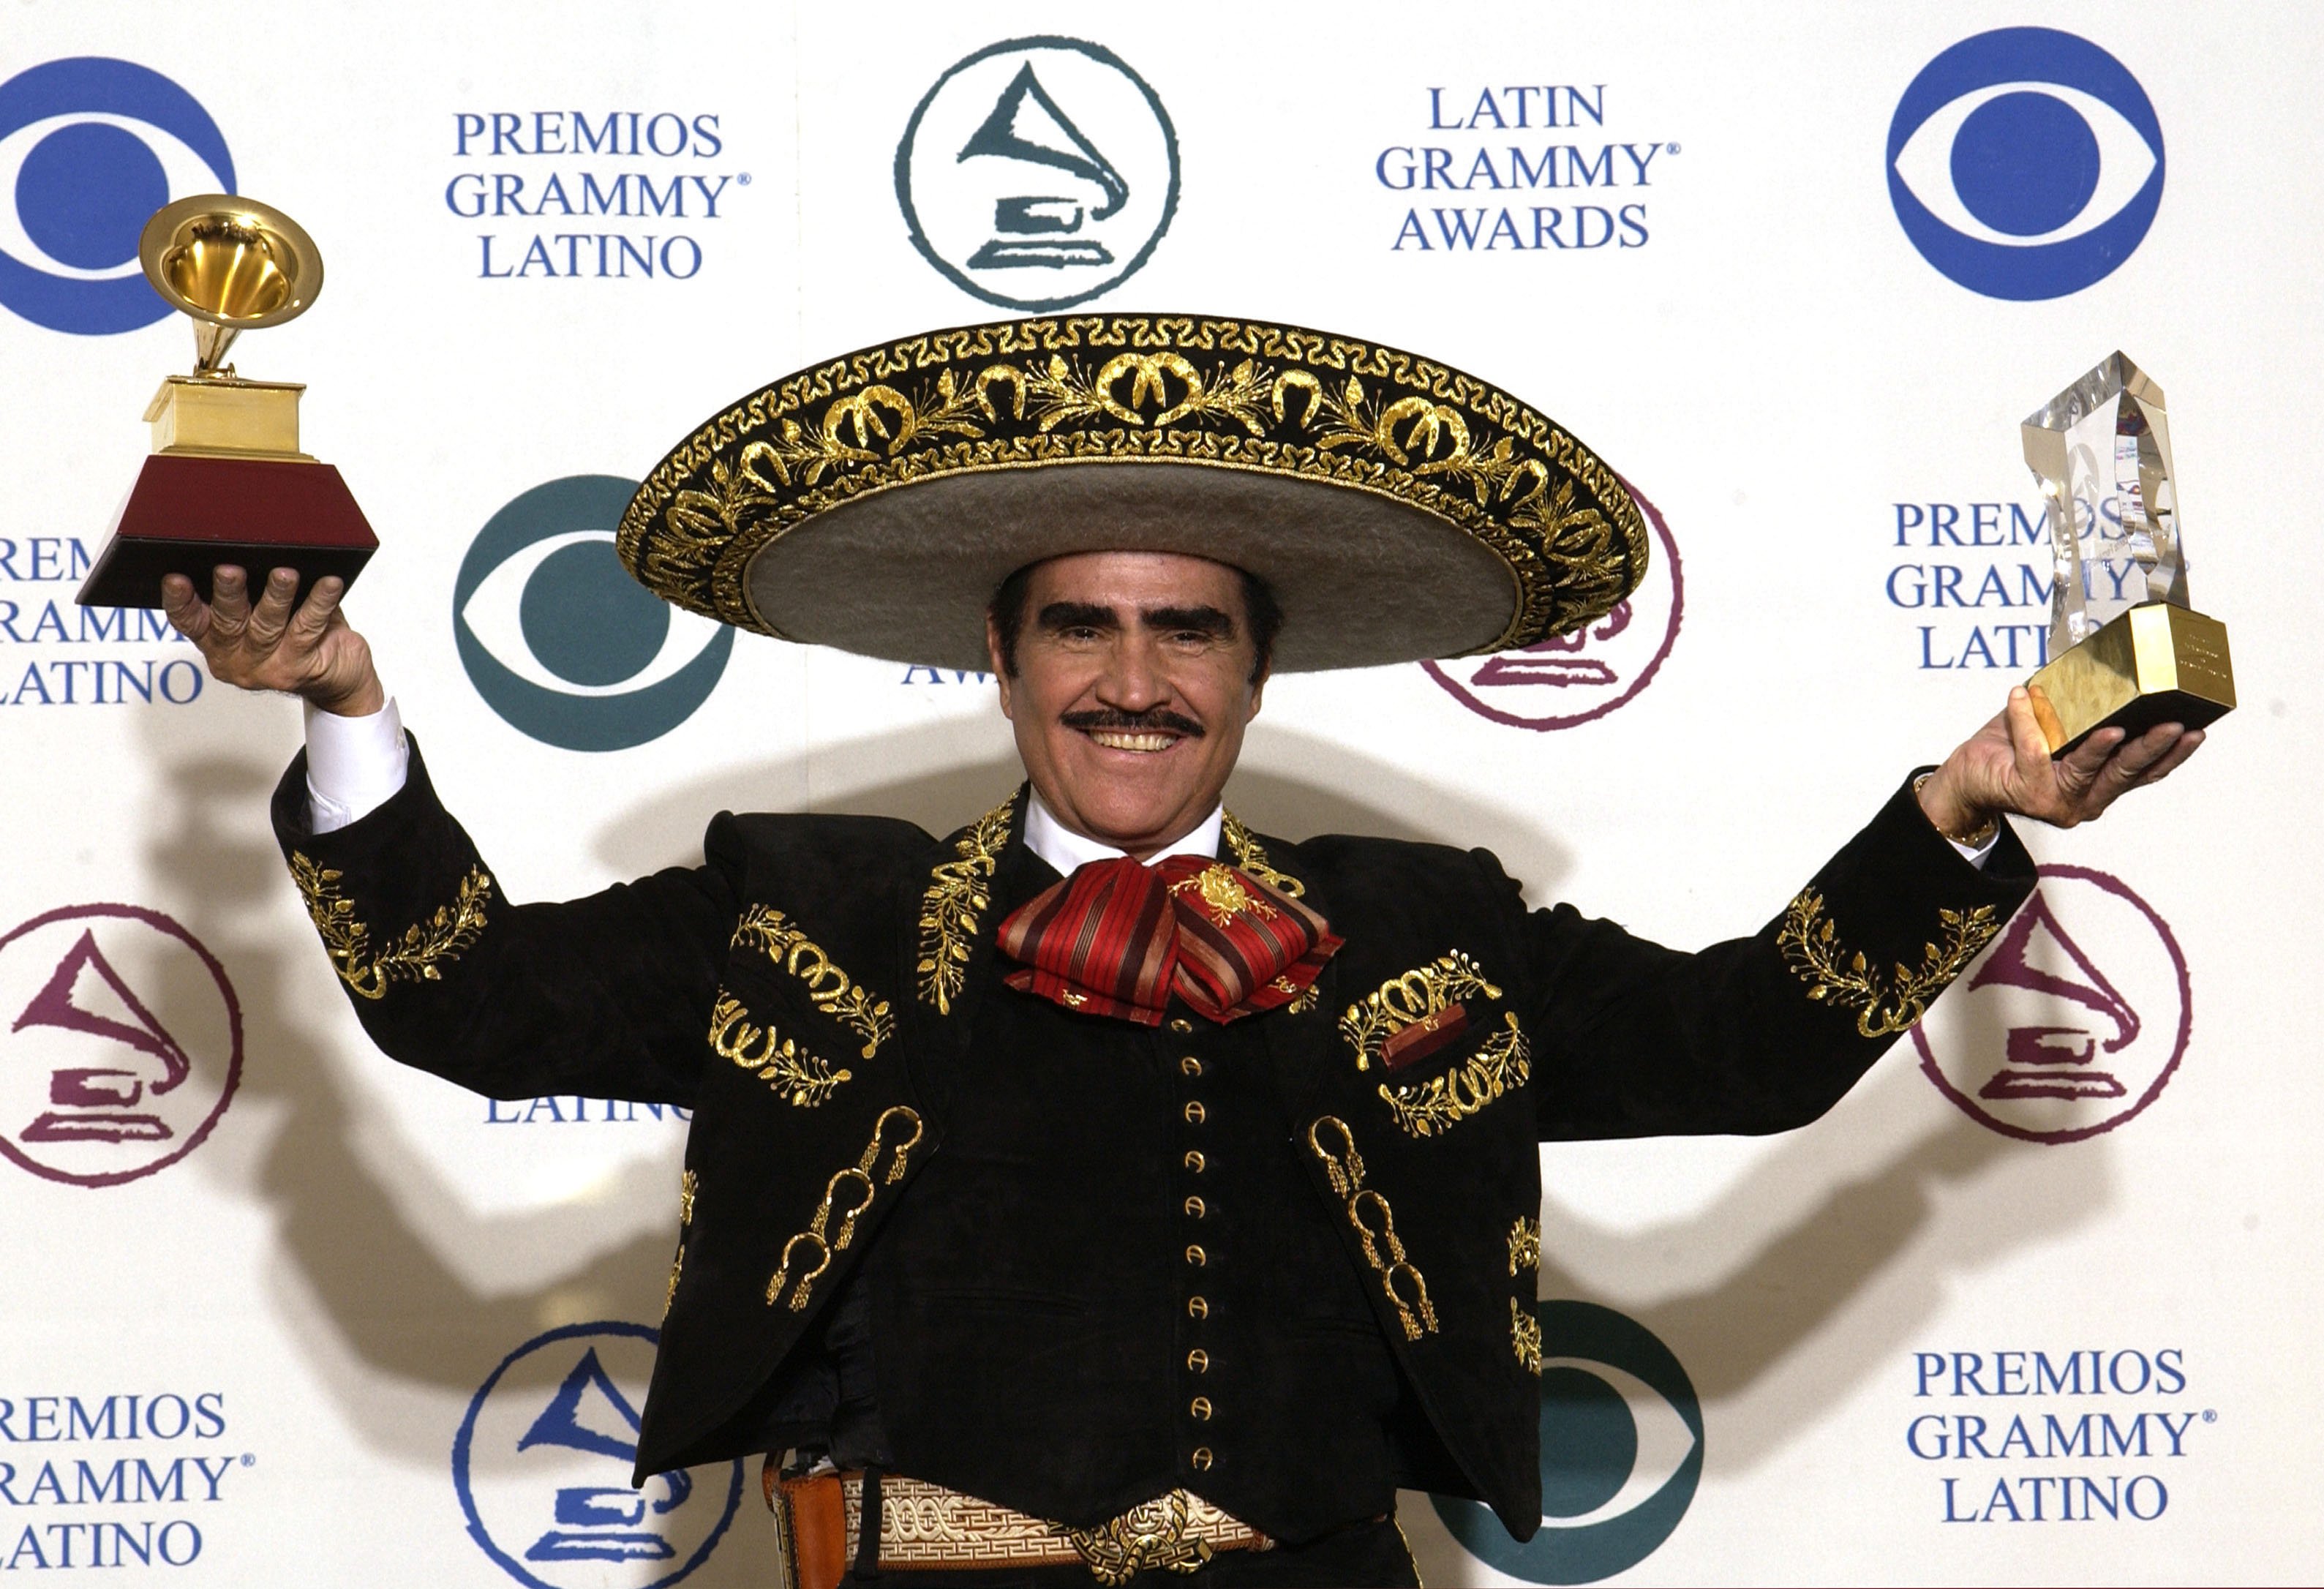 Vicente Fernández en Premios Grammy Latino 2002 en Los Ángeles. | Foto: Getty Images